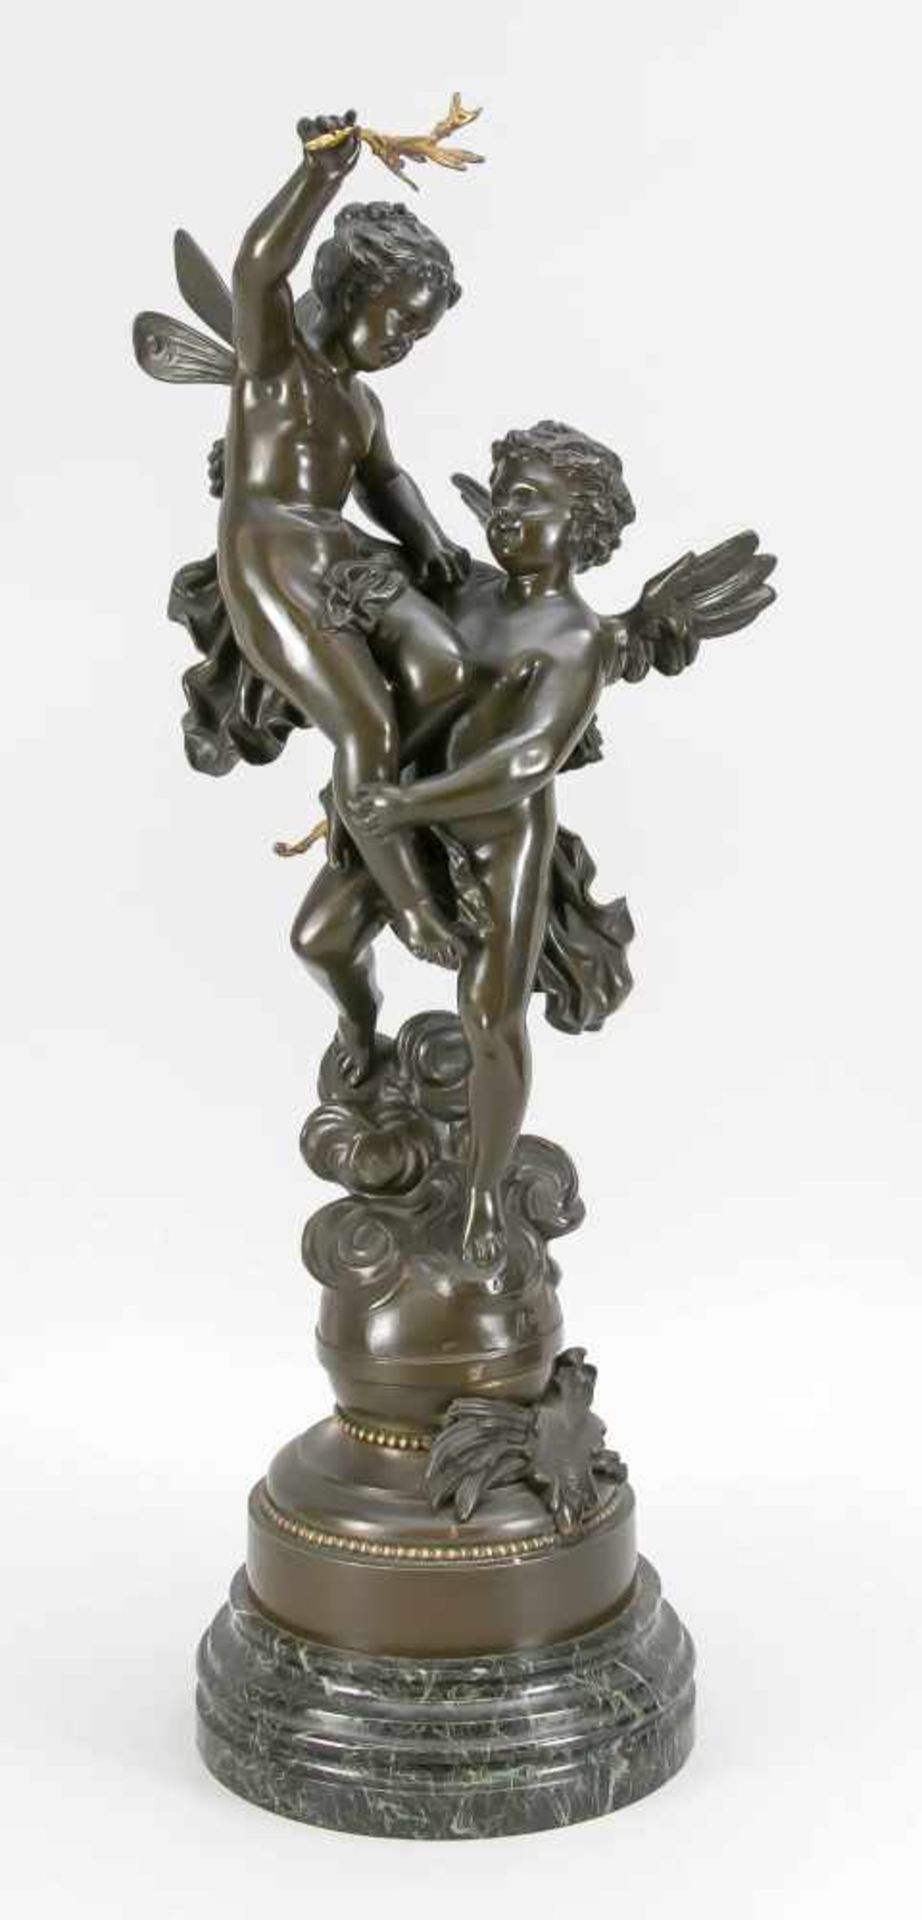 Ernest Rancoulet (1842-1918), große Bronzegruppe "Triumphato", junges Engelpärchen sich